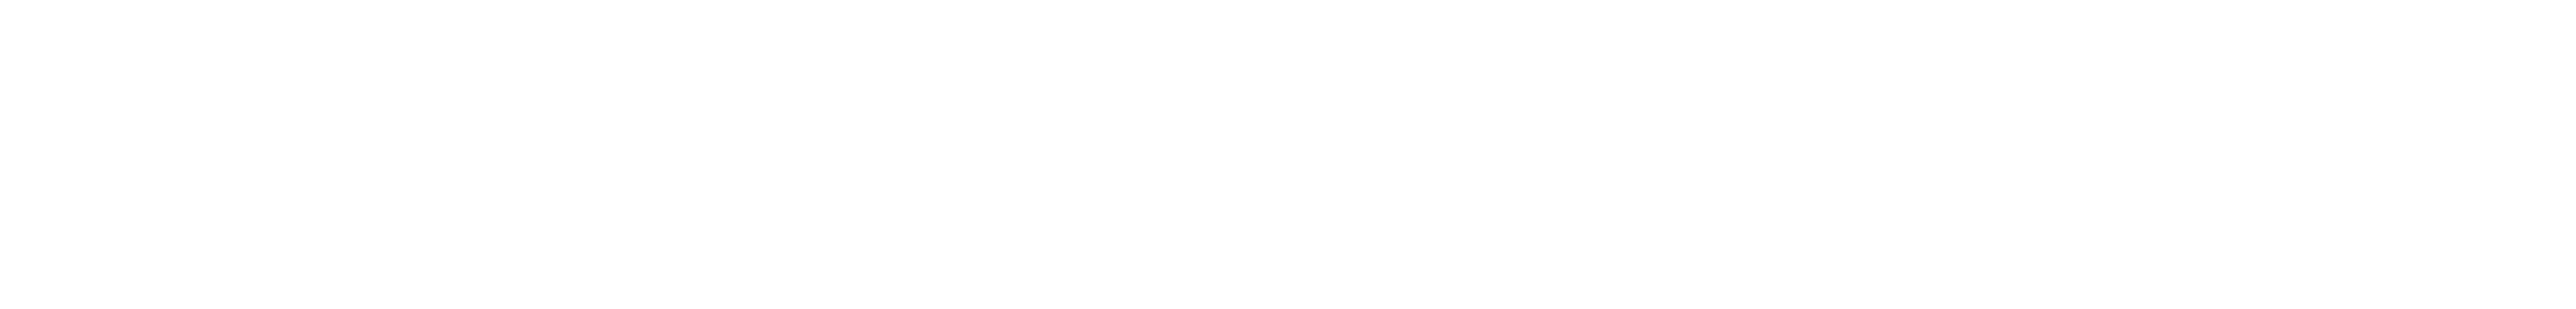 PlayStation 5 and Playstation 4 Logo